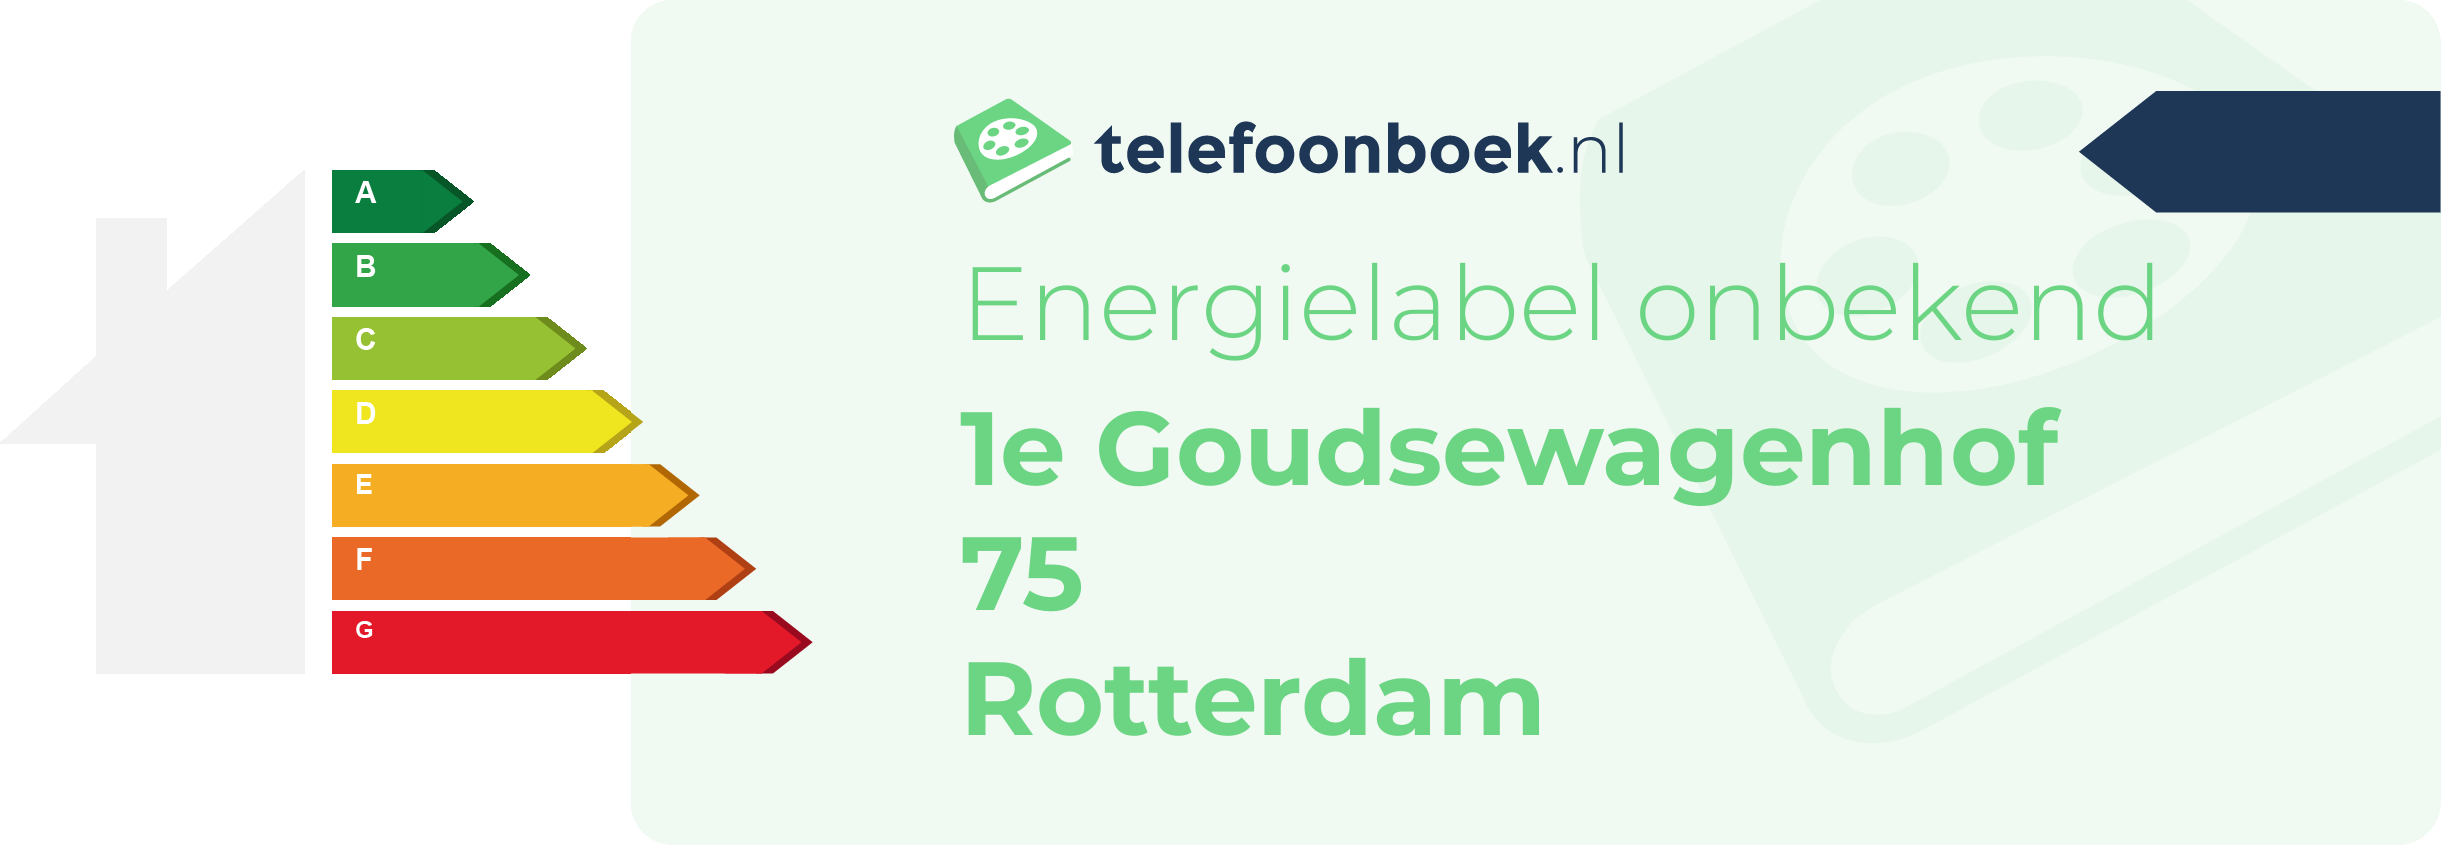 Energielabel 1e Goudsewagenhof 75 Rotterdam